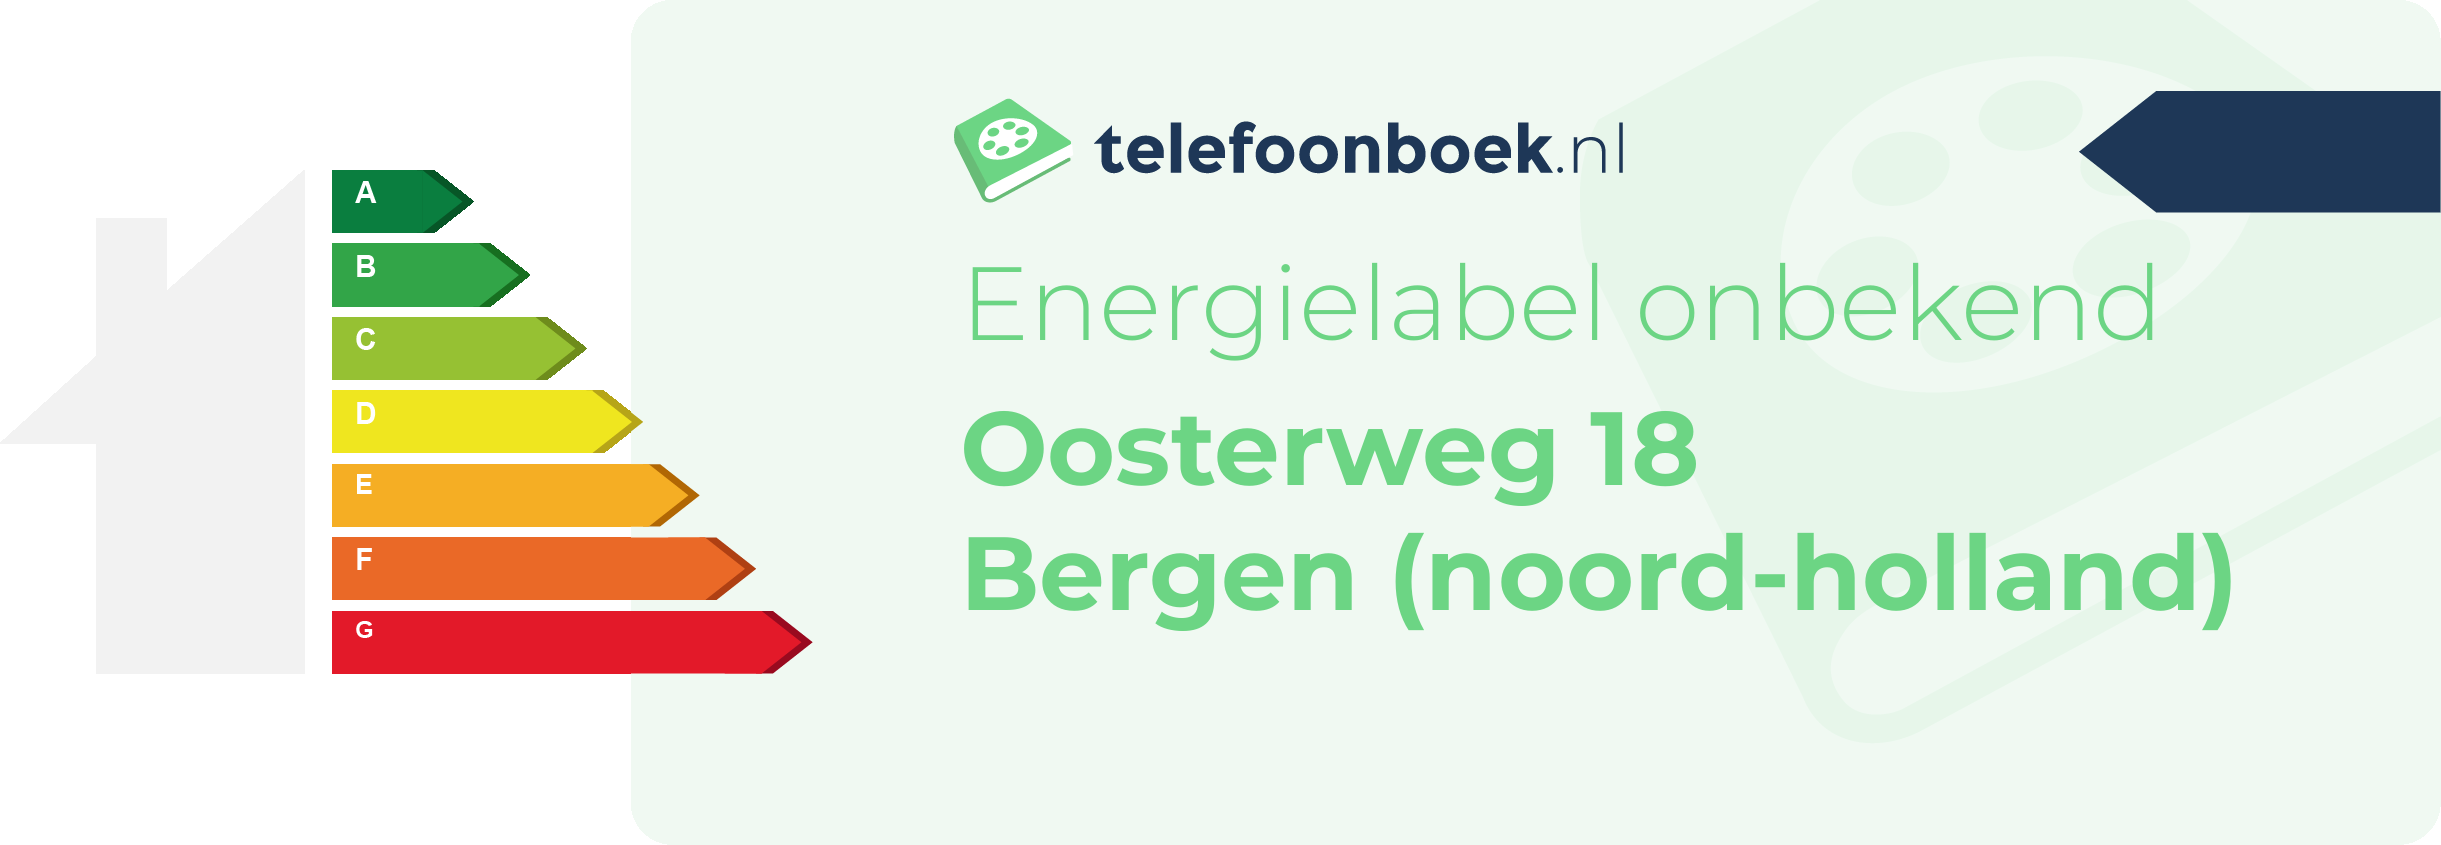 Energielabel Oosterweg 18 Bergen (Noord-Holland)